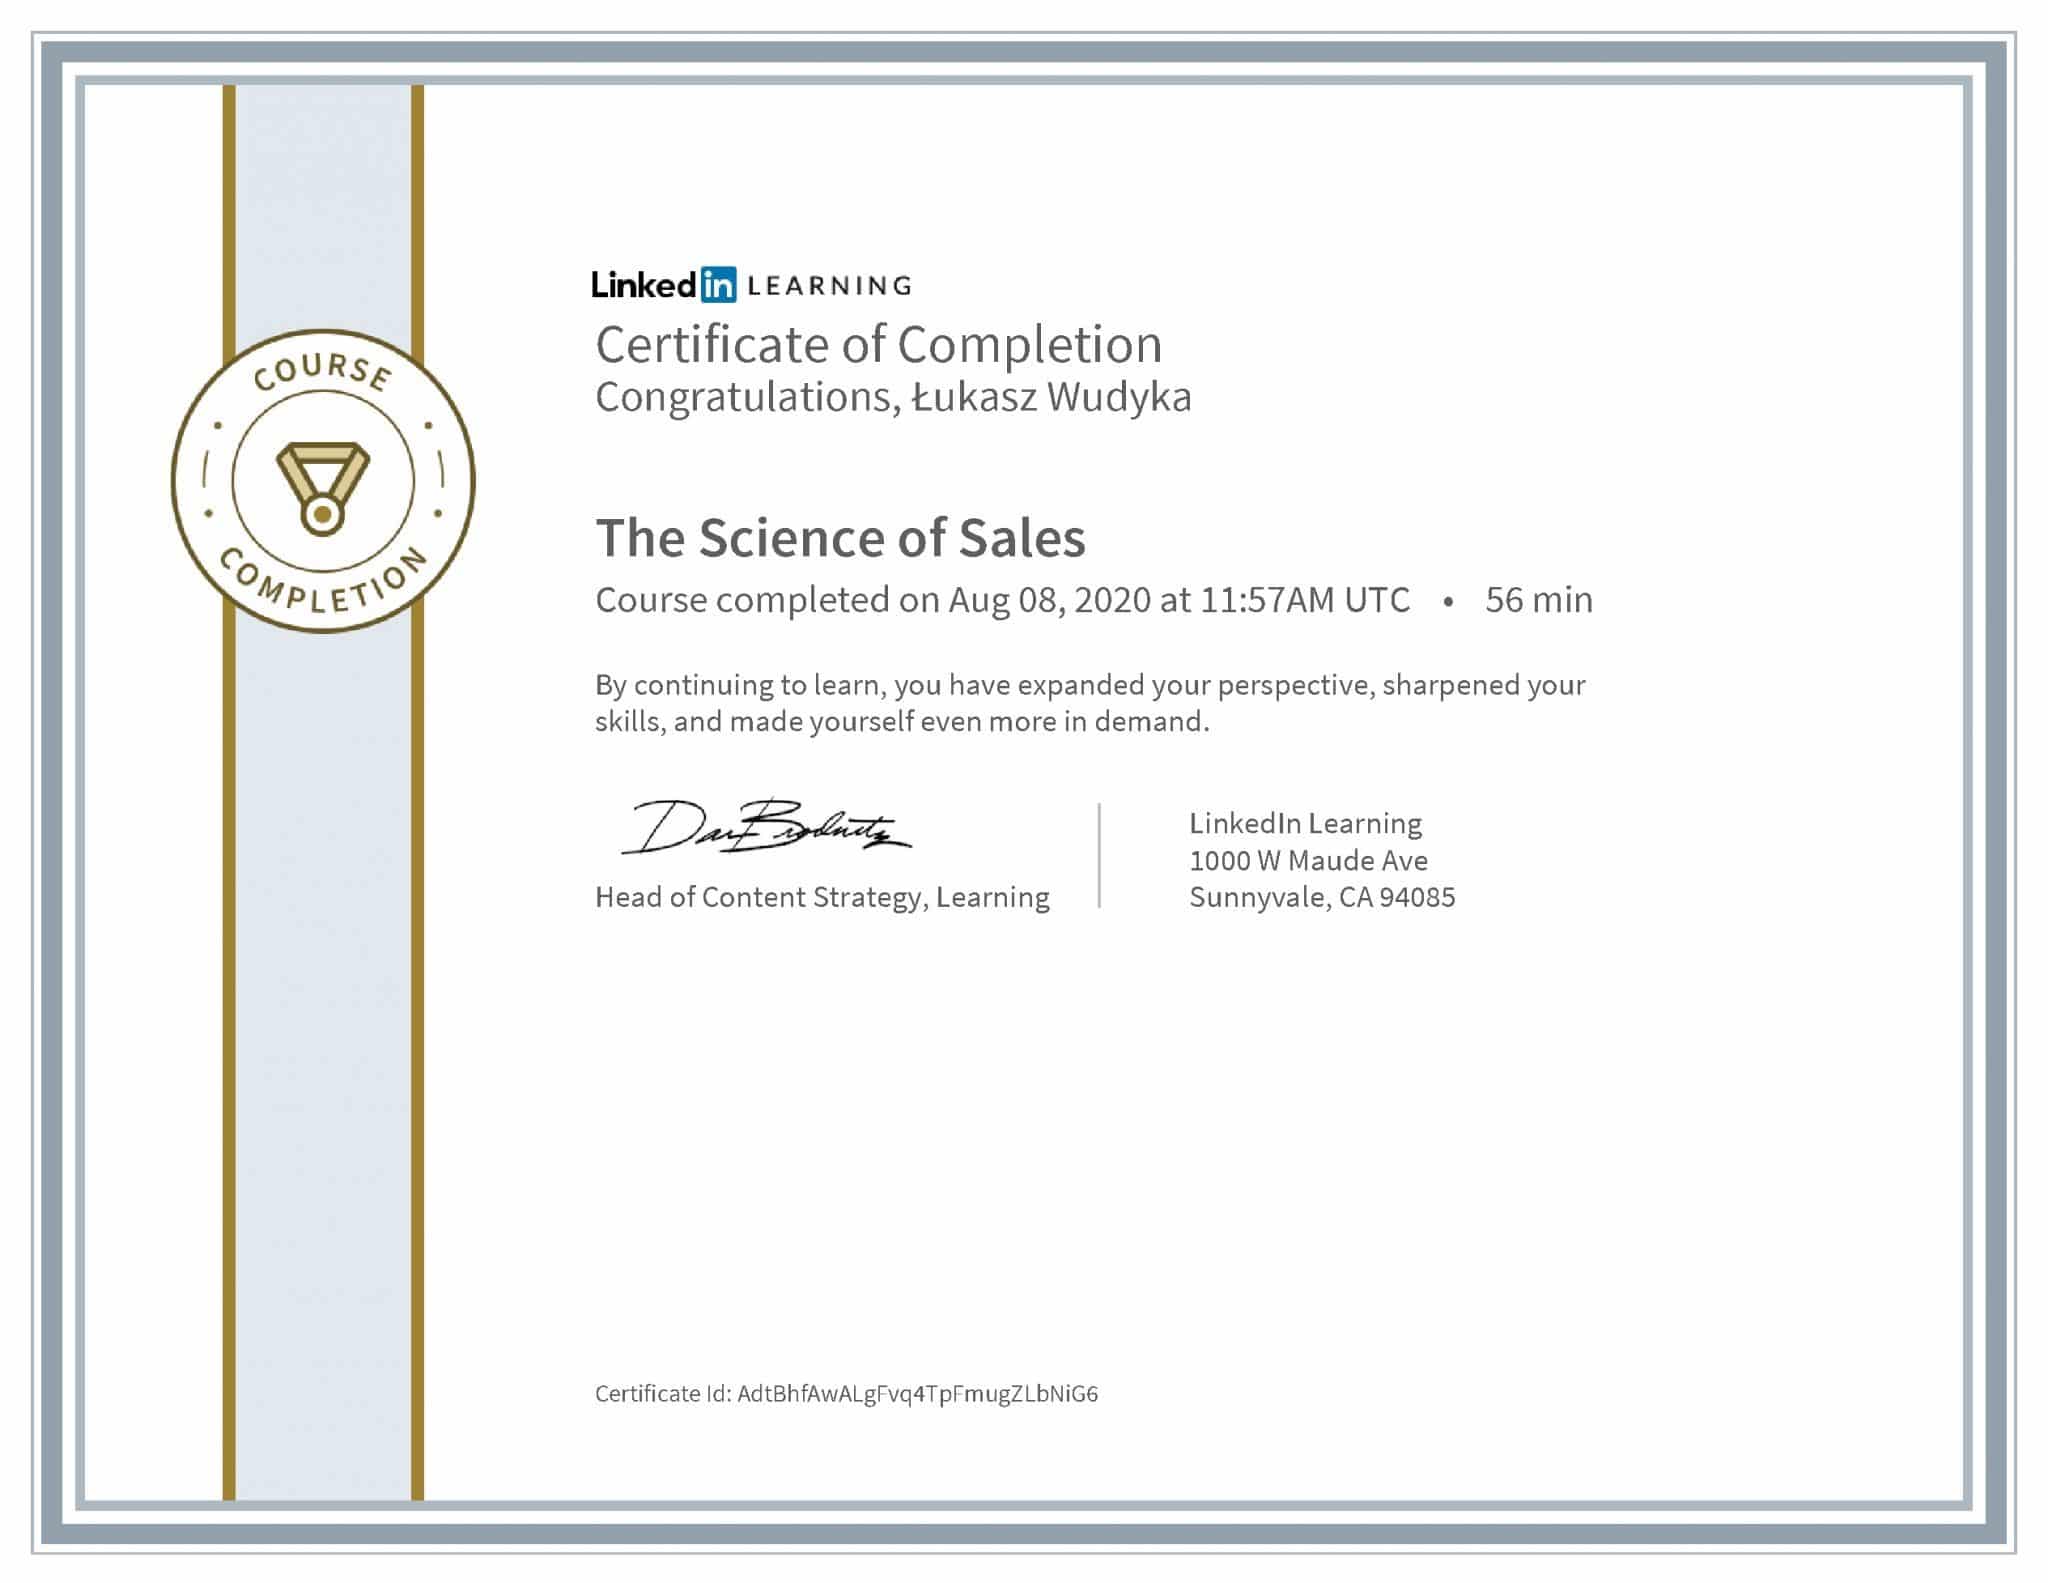 Łukasz Wudyka certyfikat LinkedIn The Science of Sales